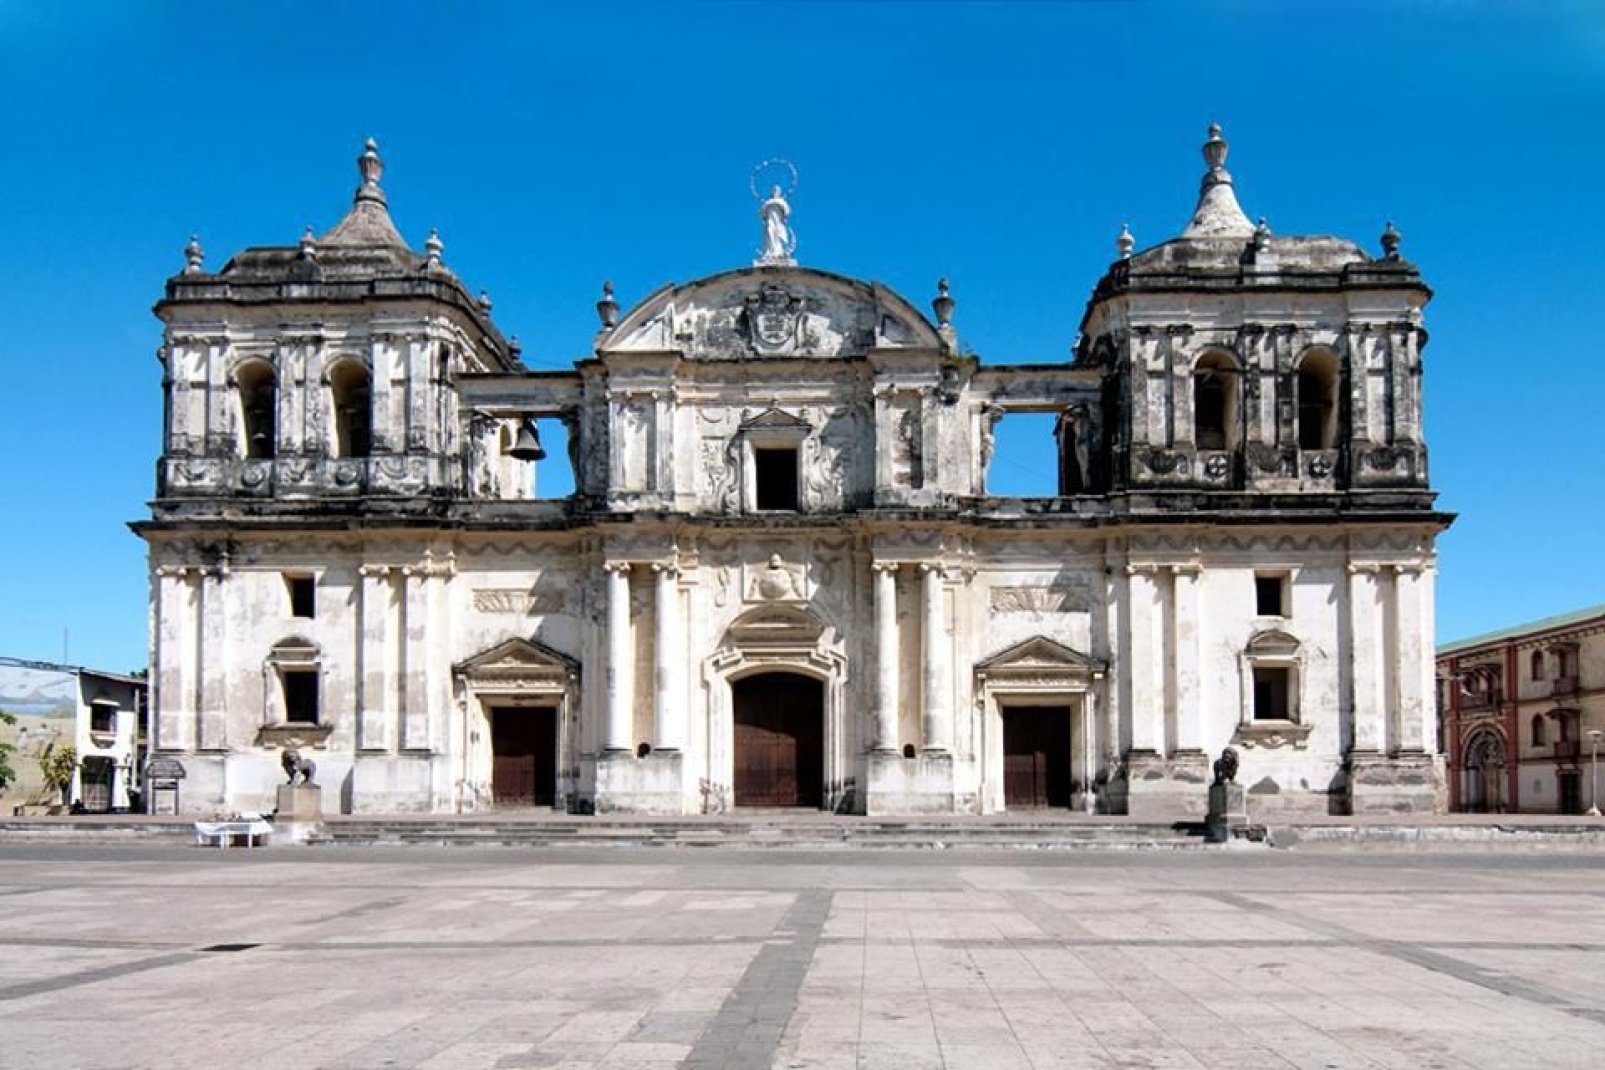 Cette cathédrale baroque coloniale est inscrite au patrimoine de l'UNESCO depuis juin 2011. Elle a notamment été élevée au rang de Basilique au 19ème siècle.